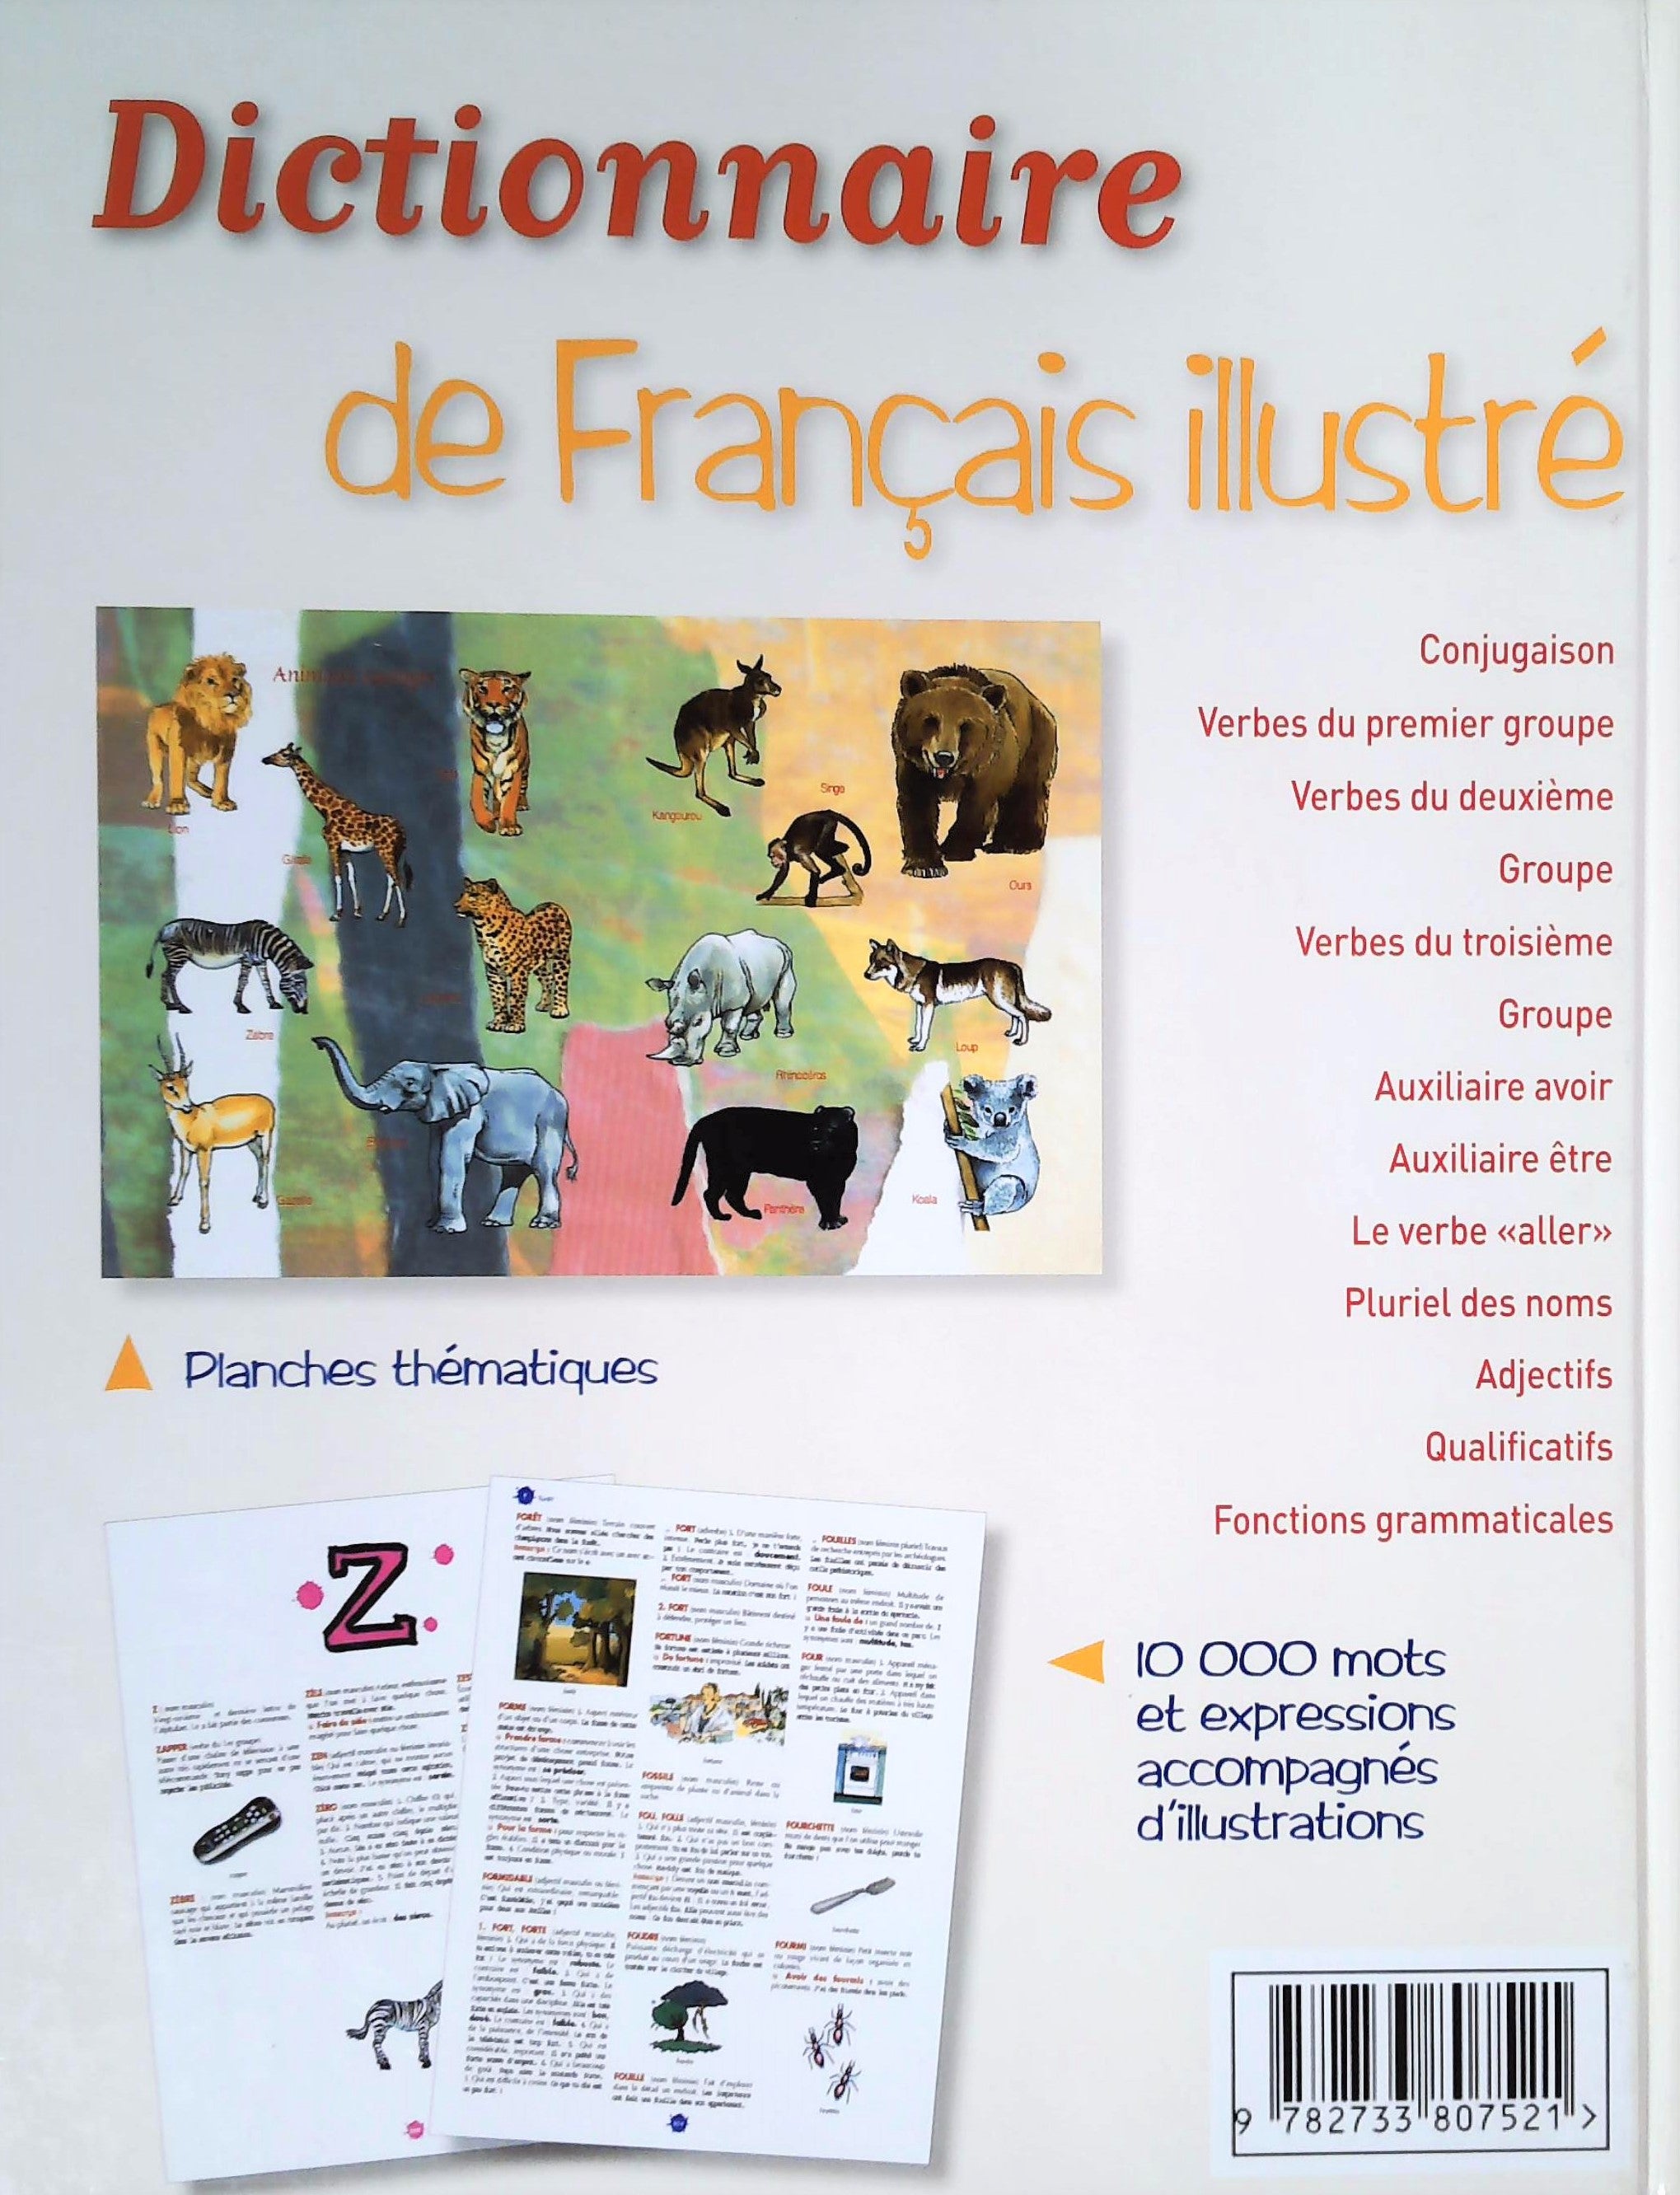 Dictionnaire de Français illustré